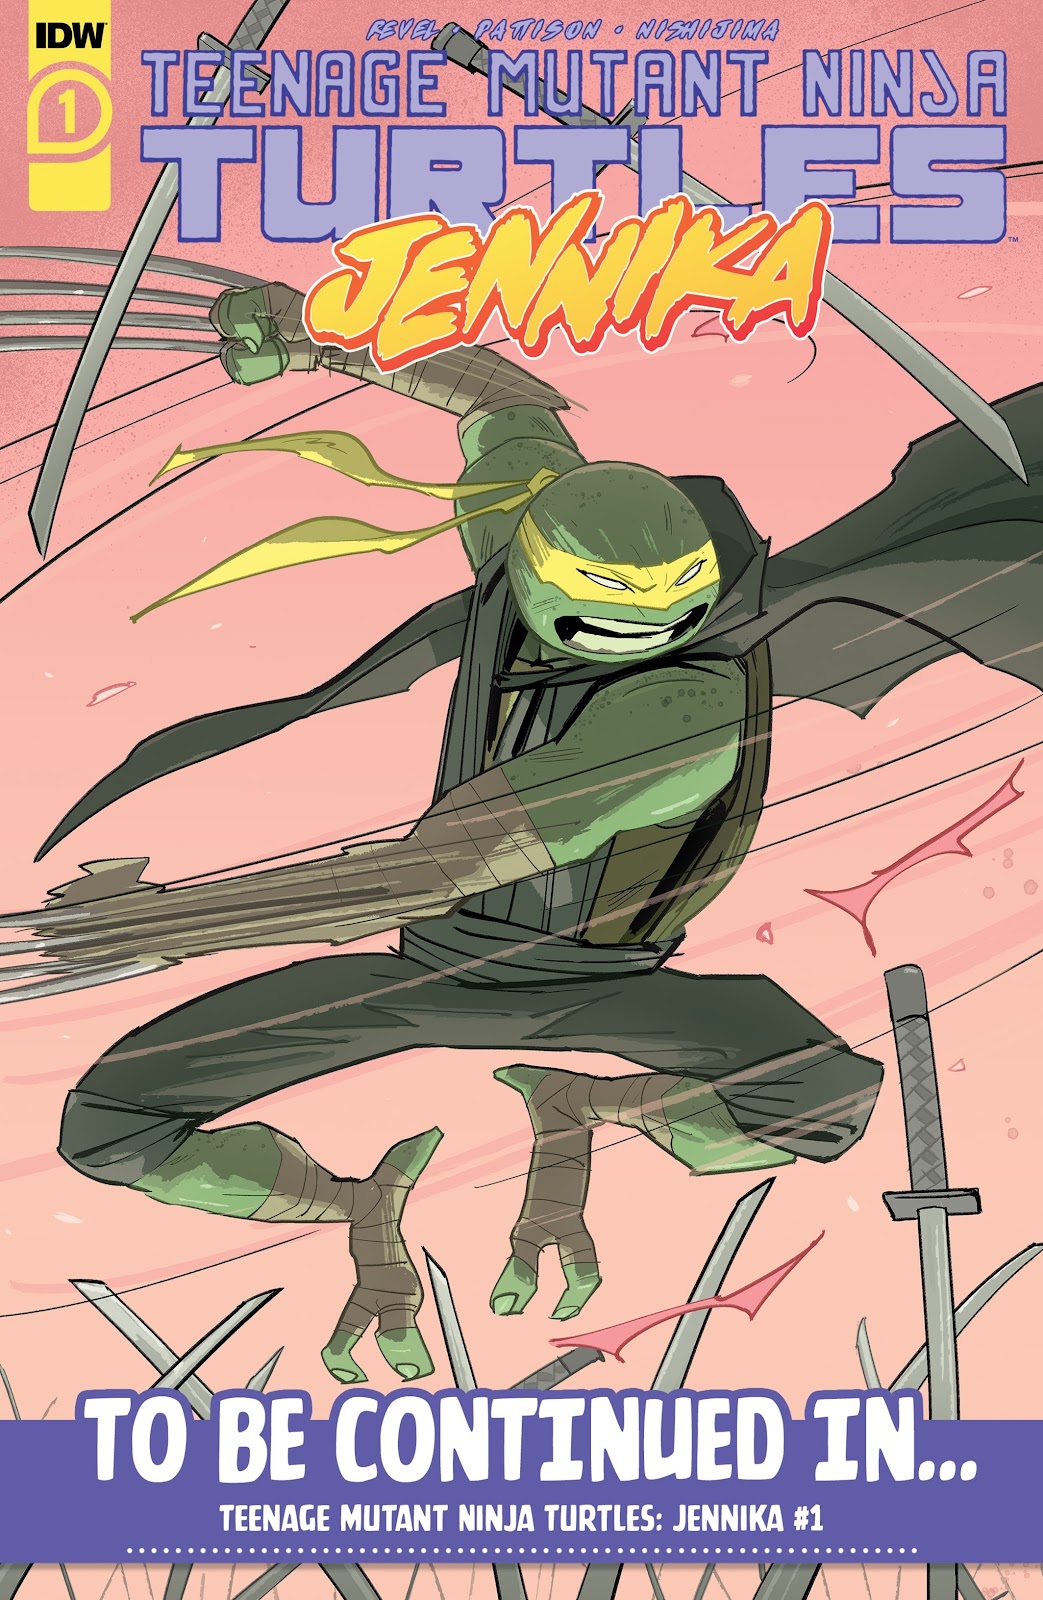 Teenage Mutant Ninja Turtles: The Last Ronin issue 3 - Page 53